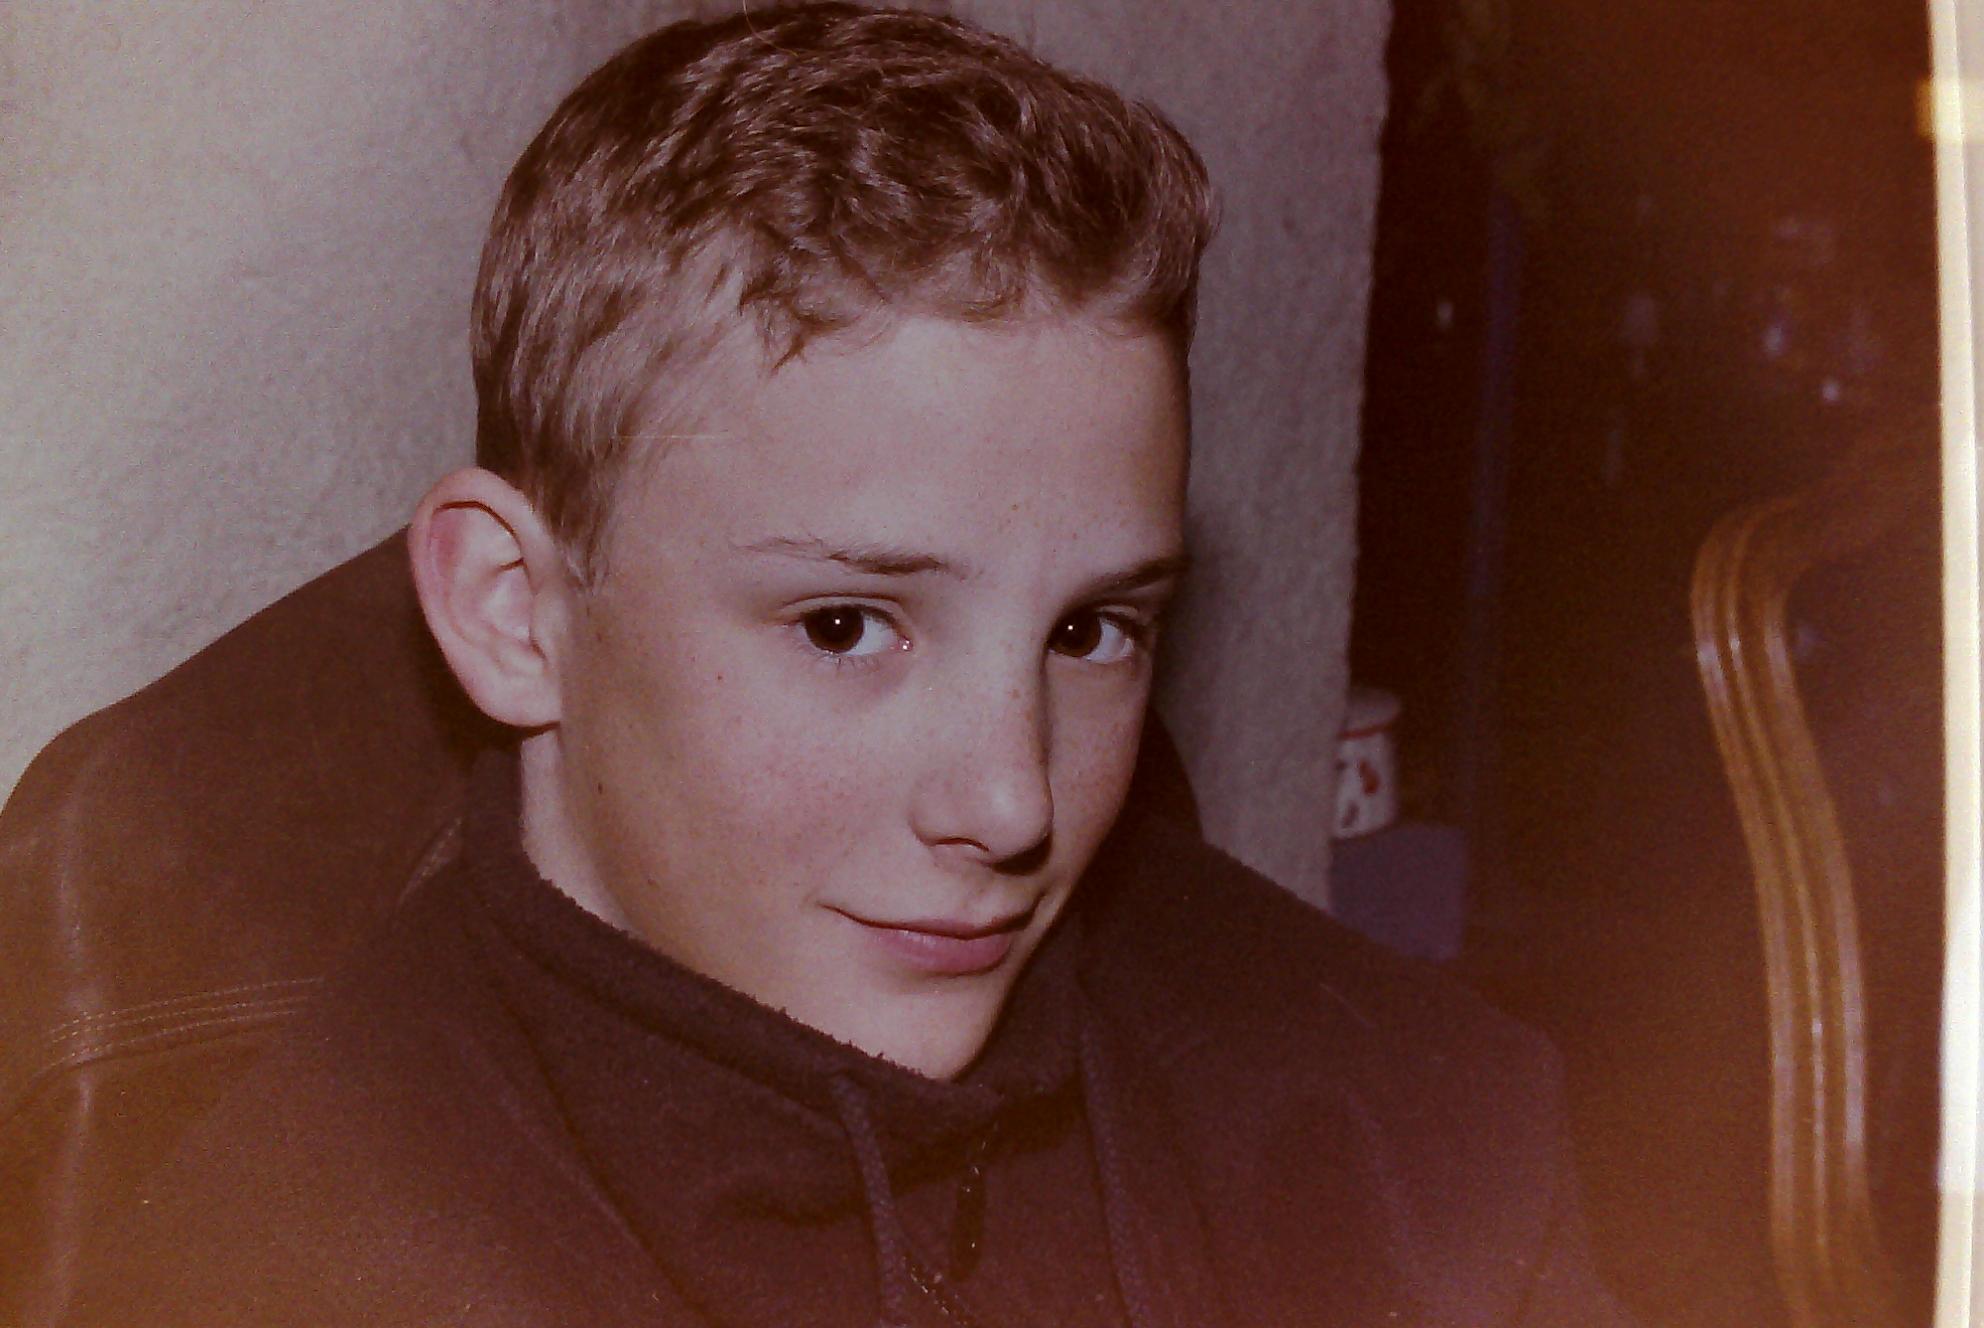 Jérôme Menétrey, victime présumée d’abus sexuels en 1997. Il avait 12 ans. Il ne s'est jamais remis de cette période et est décédé des suites d'une toxicomanie. [RTS - DR]